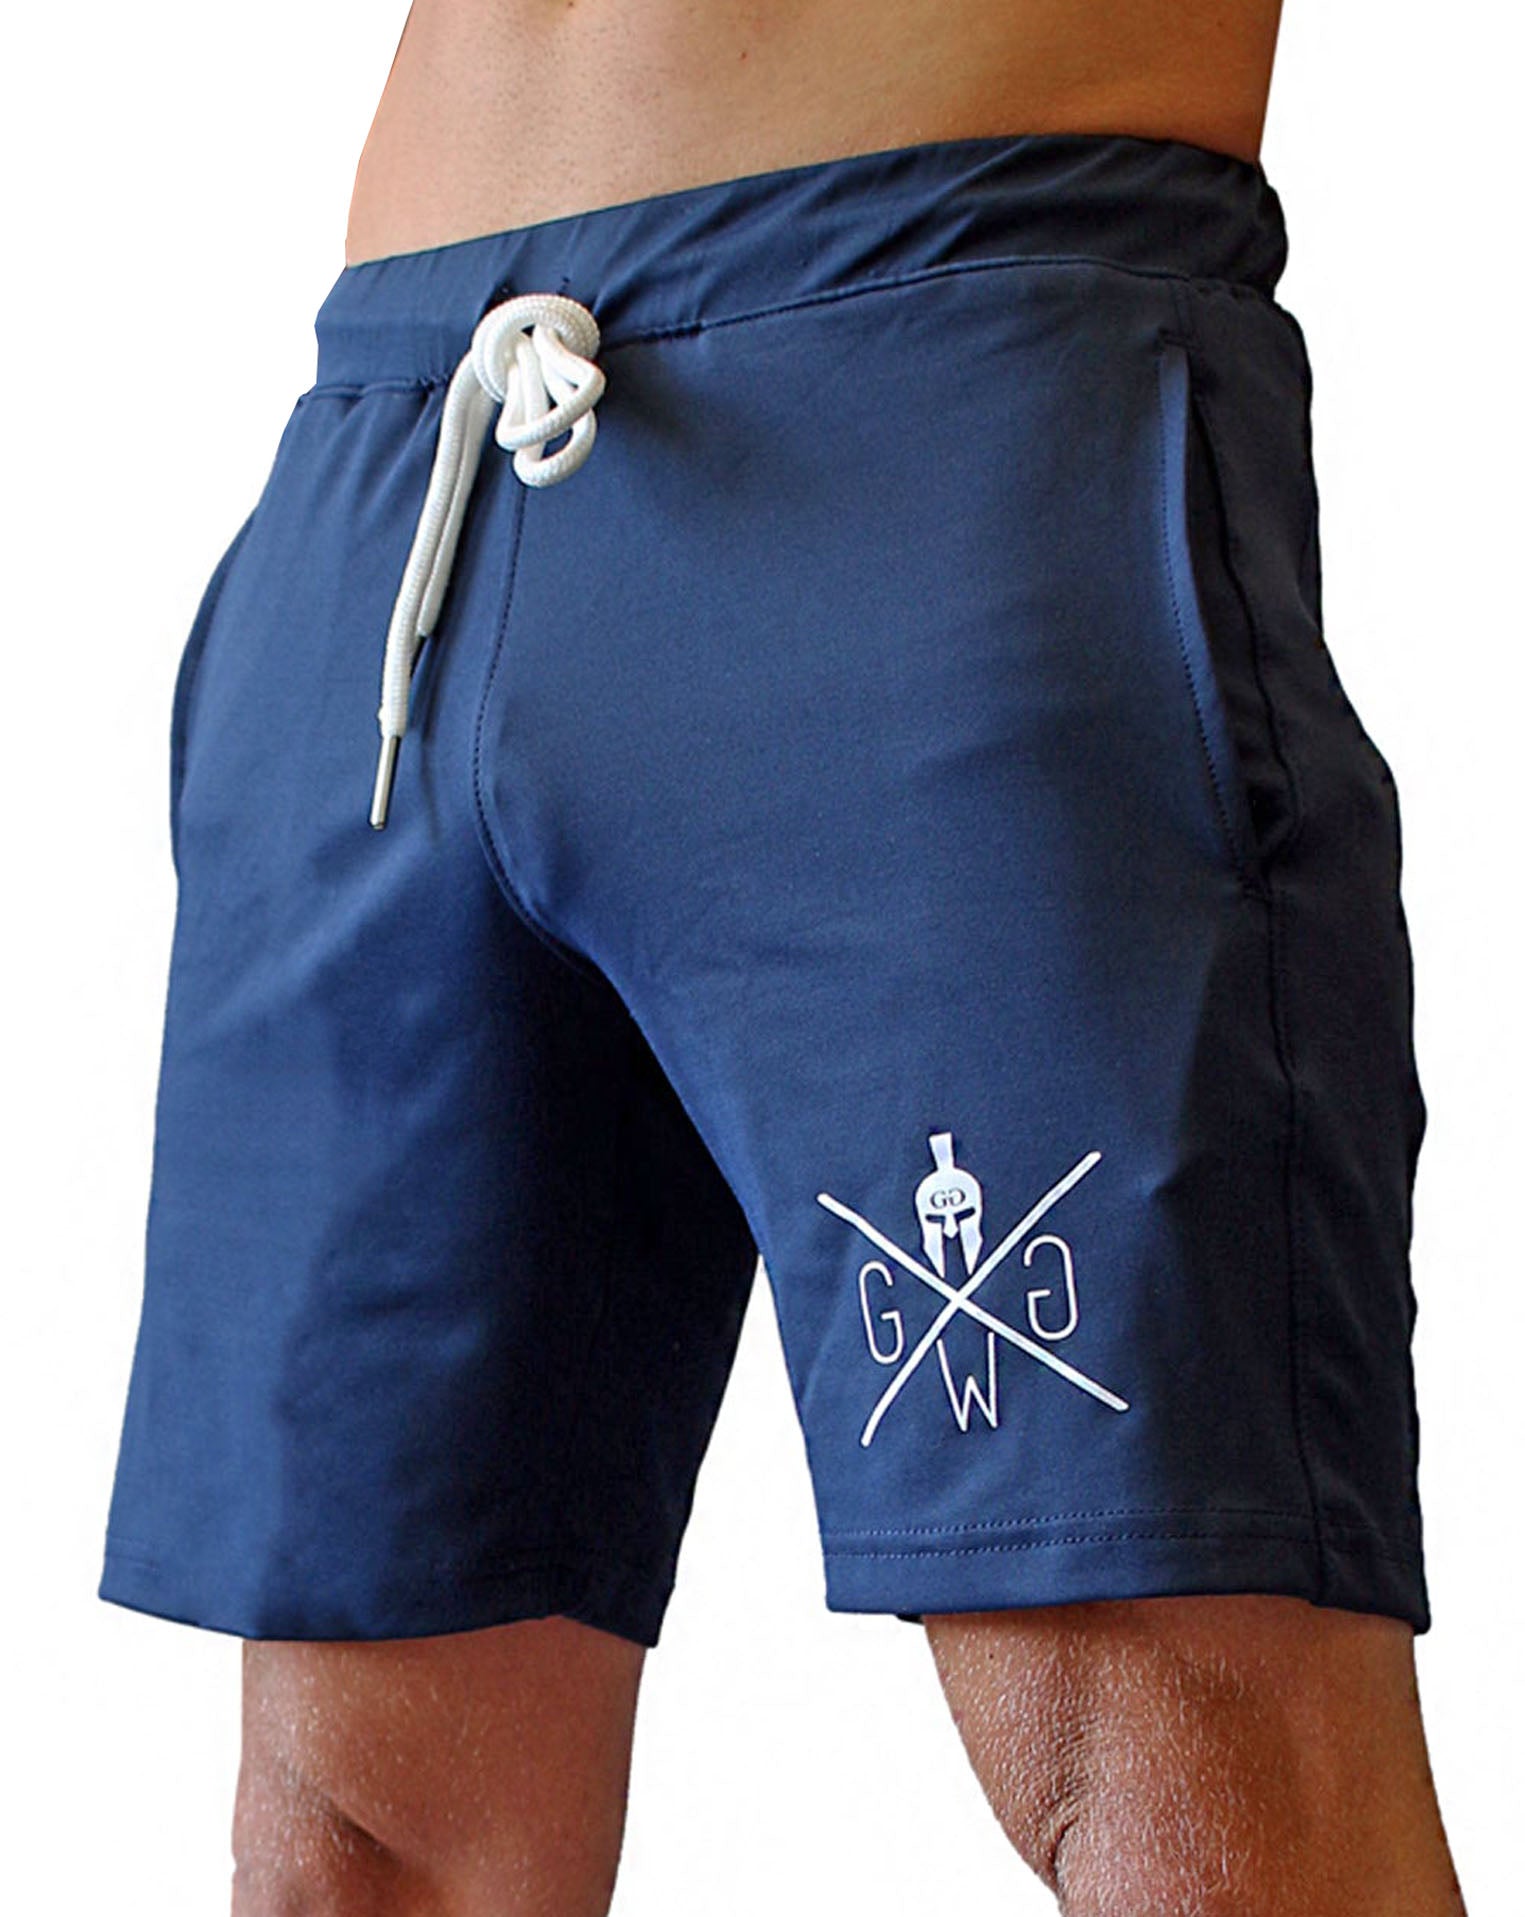 Gym Generation Herren Fitness Shorts in edlem Night Blue, mit gedrucktem Spartaner Logo und praktischen Seitentaschen.